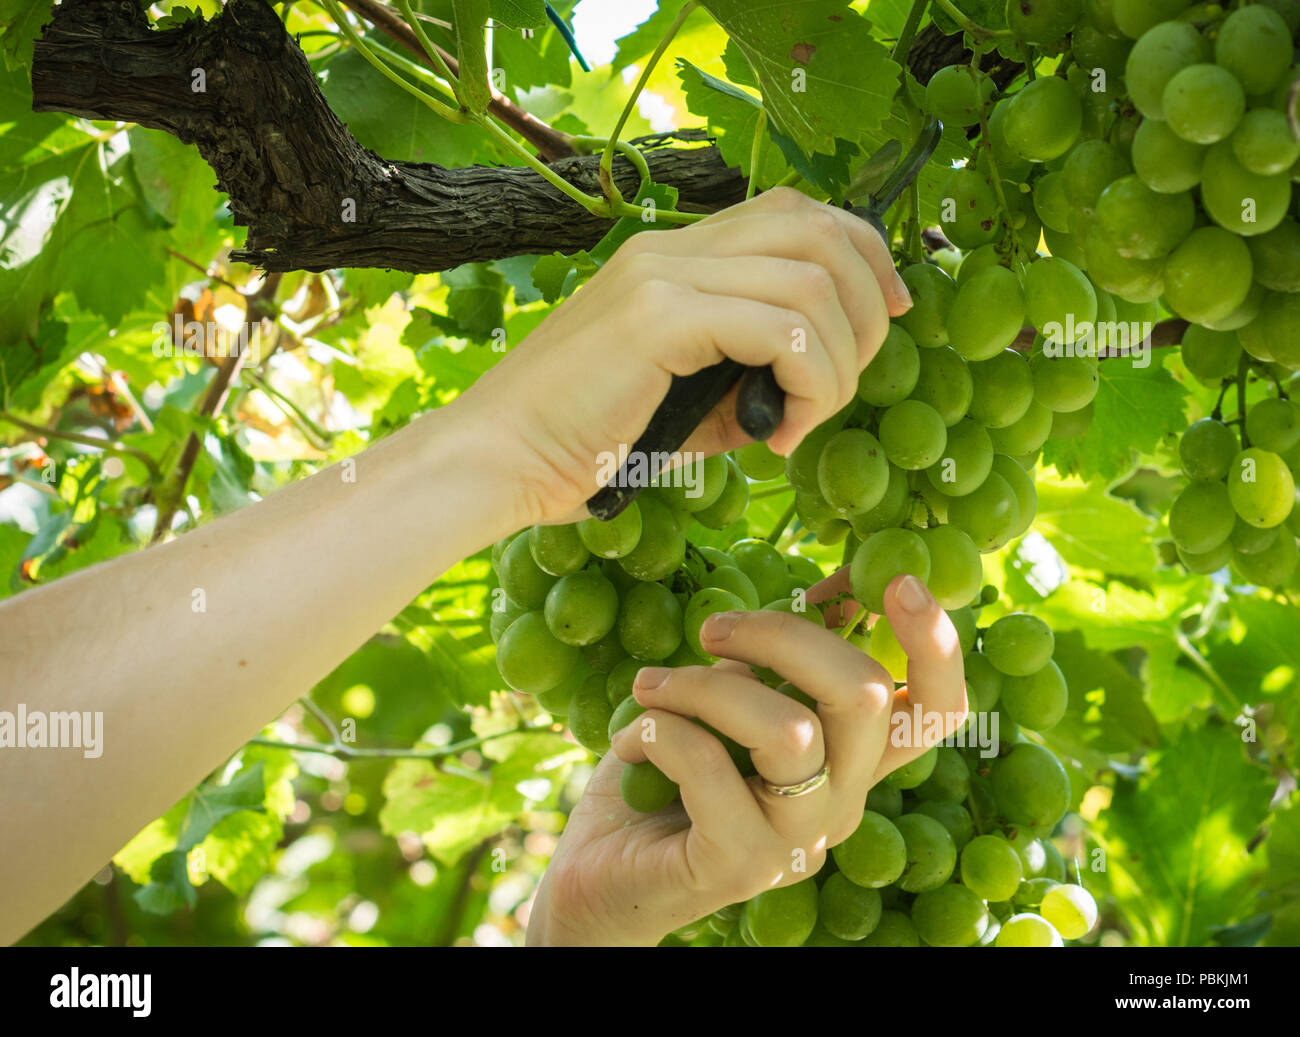 Les mains du travailleur de vignes de raisins blancs de coupe au cours de récolte du vin en septembre. La récolte du raisin dans le vignoble italien, le Tyrol du Sud, Italie Banque D'Images